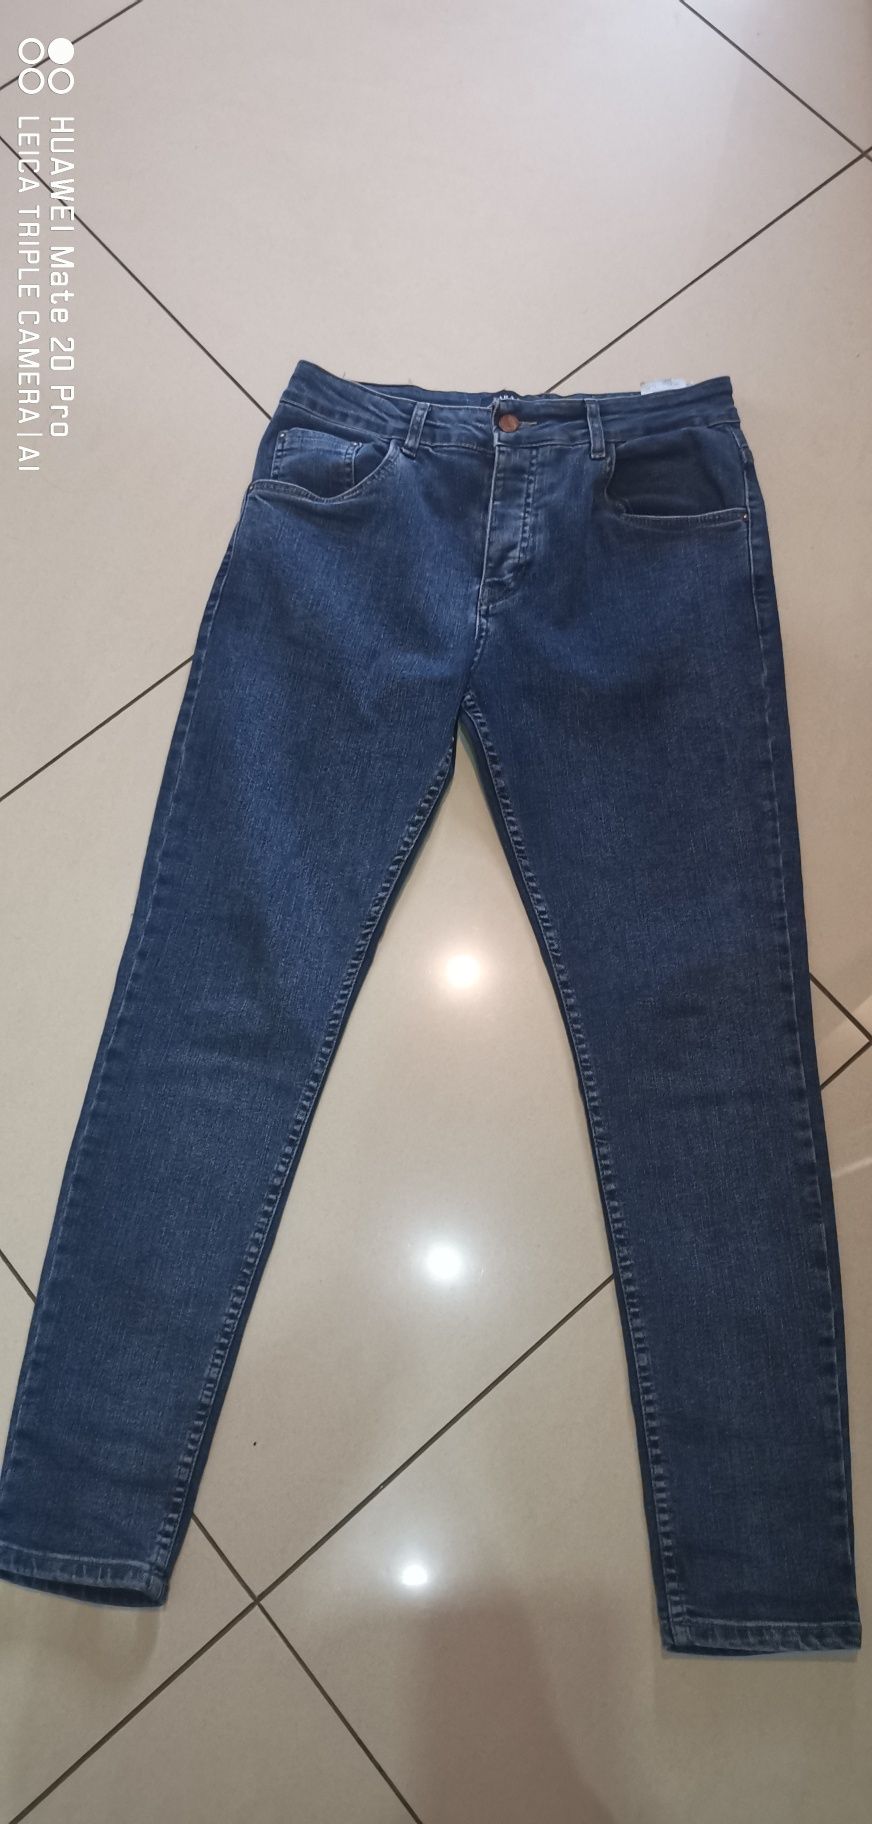 Spodnie jeansy męskie młodzieżowe firmy ZARA MAN rozmiar W 32 /30